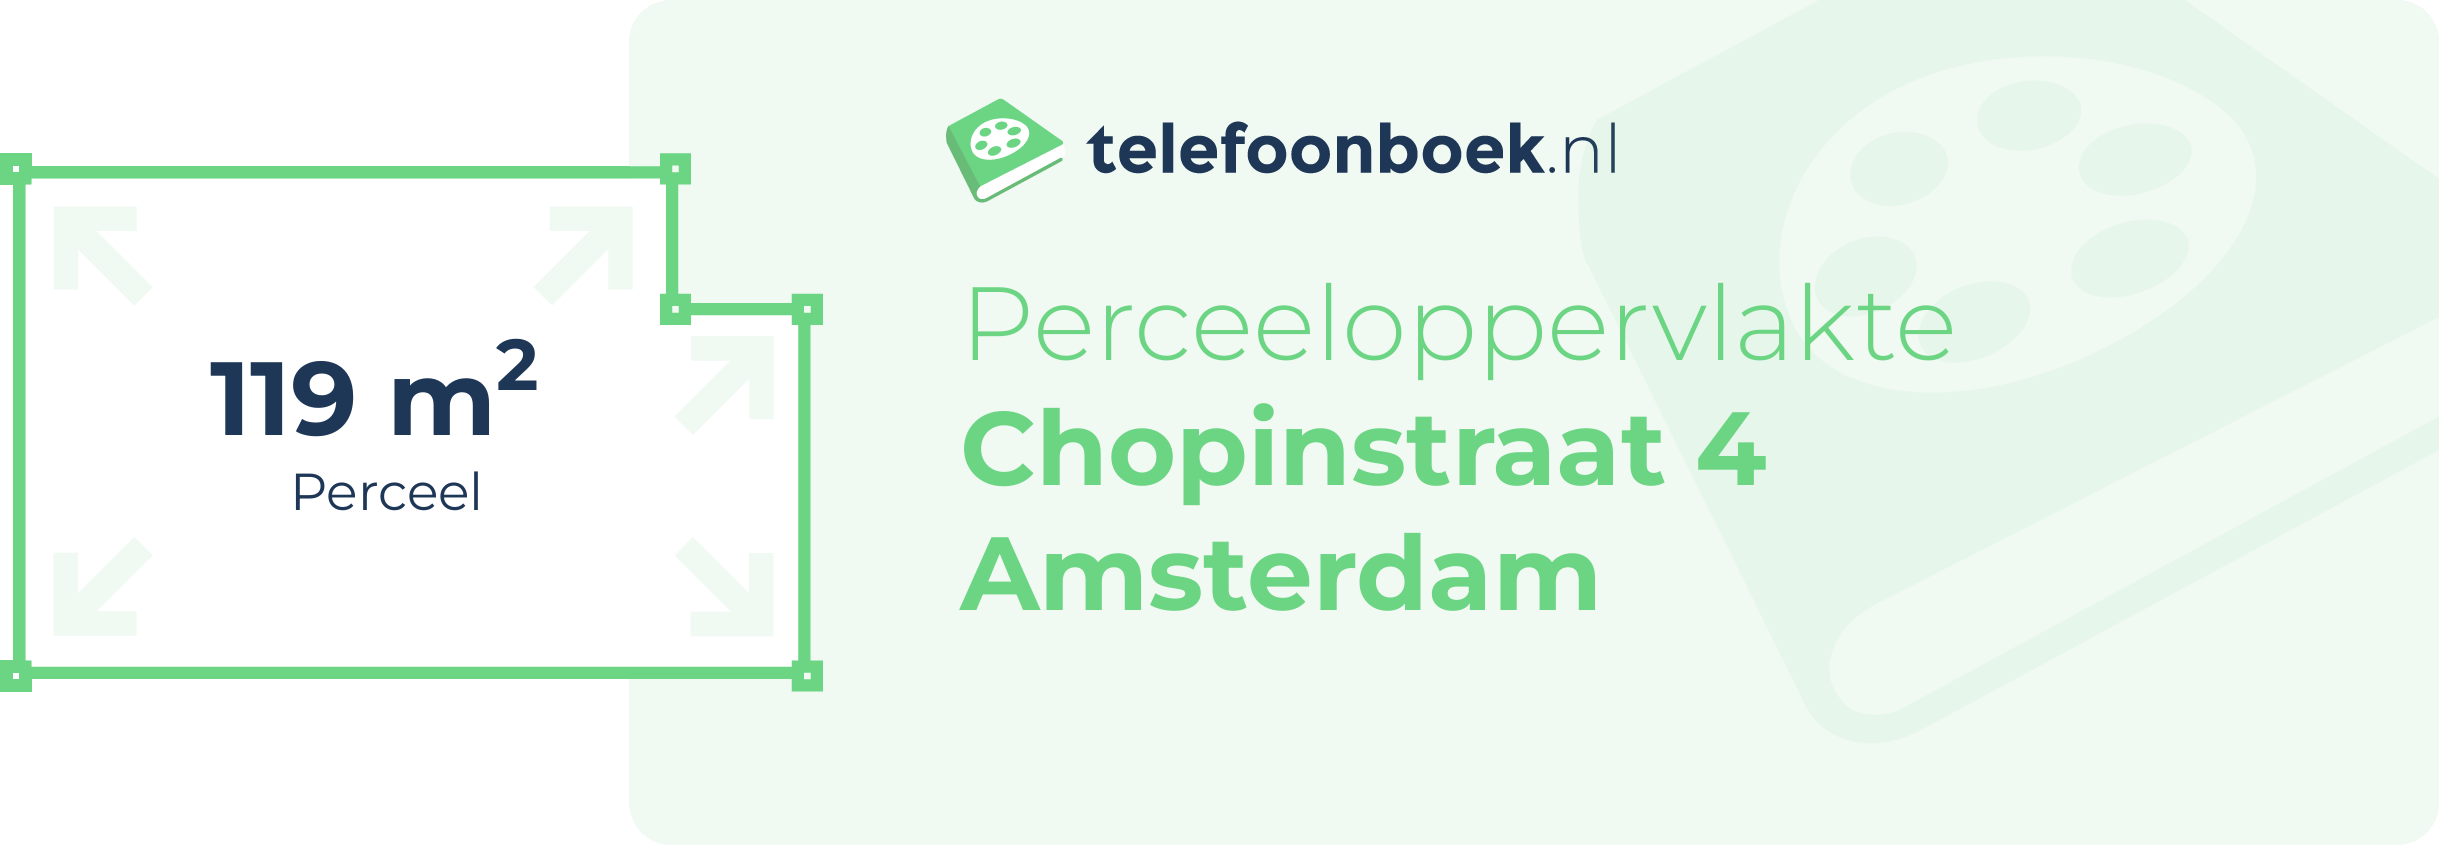 Perceeloppervlakte Chopinstraat 4 Amsterdam